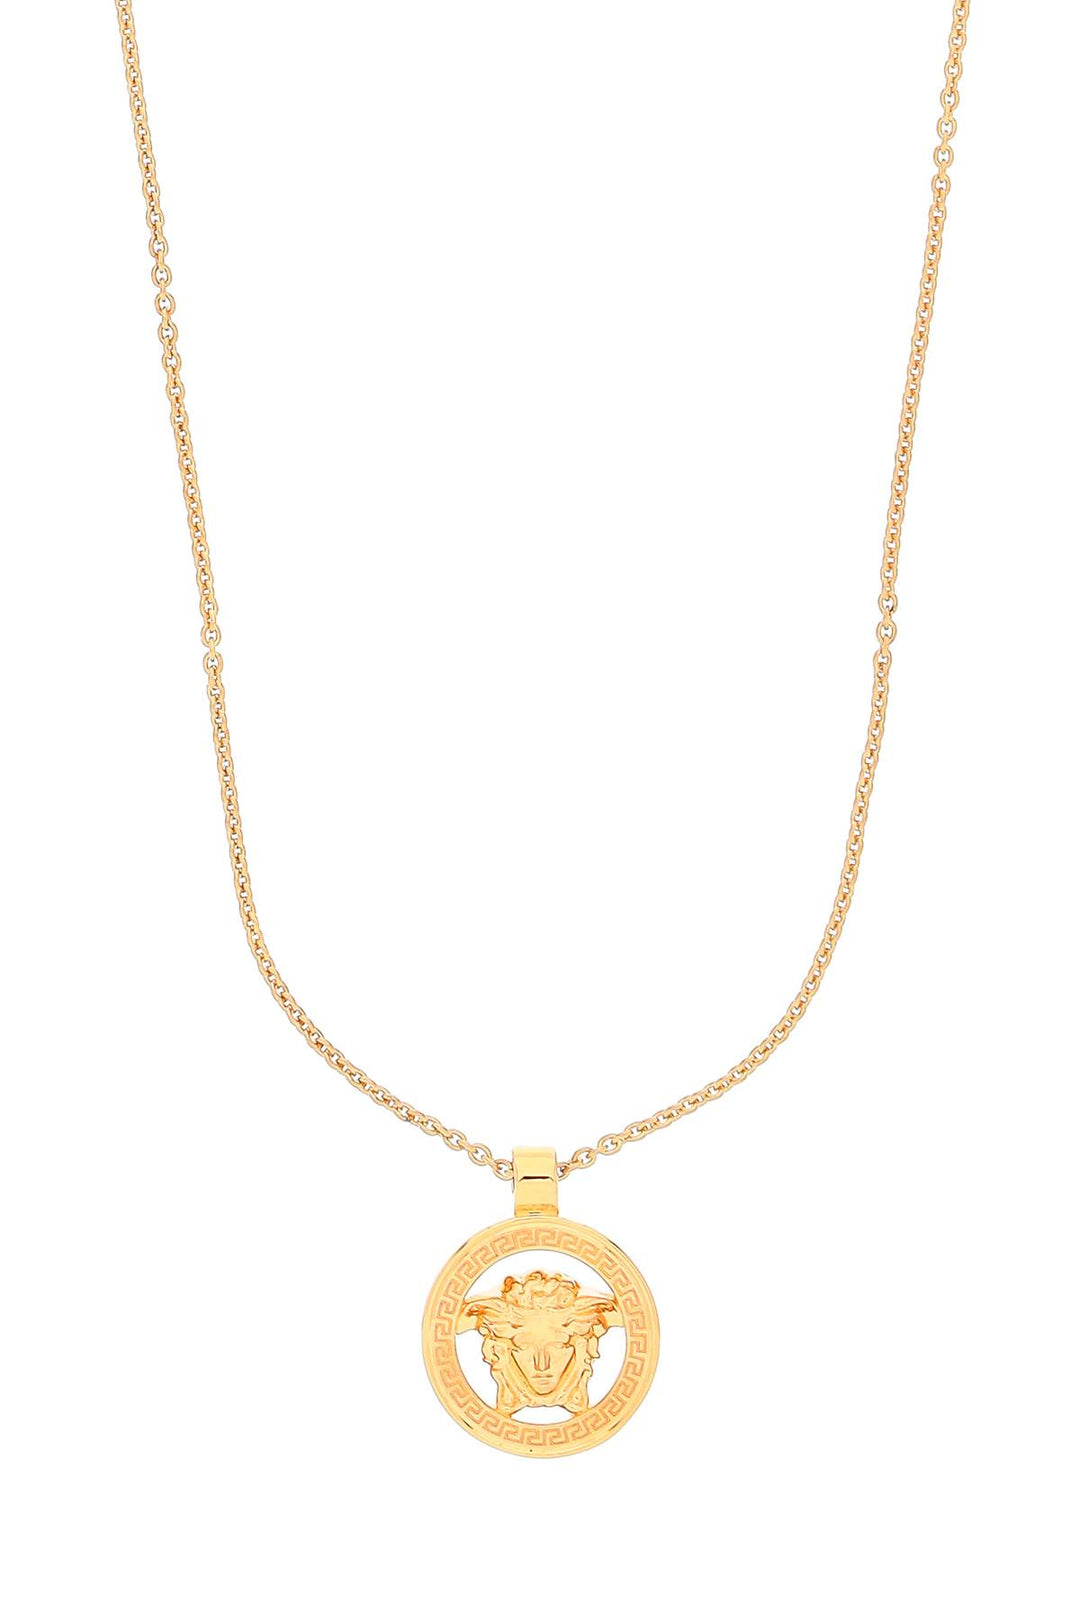 Versace Medusa '95 Pendant Necklace   Gold